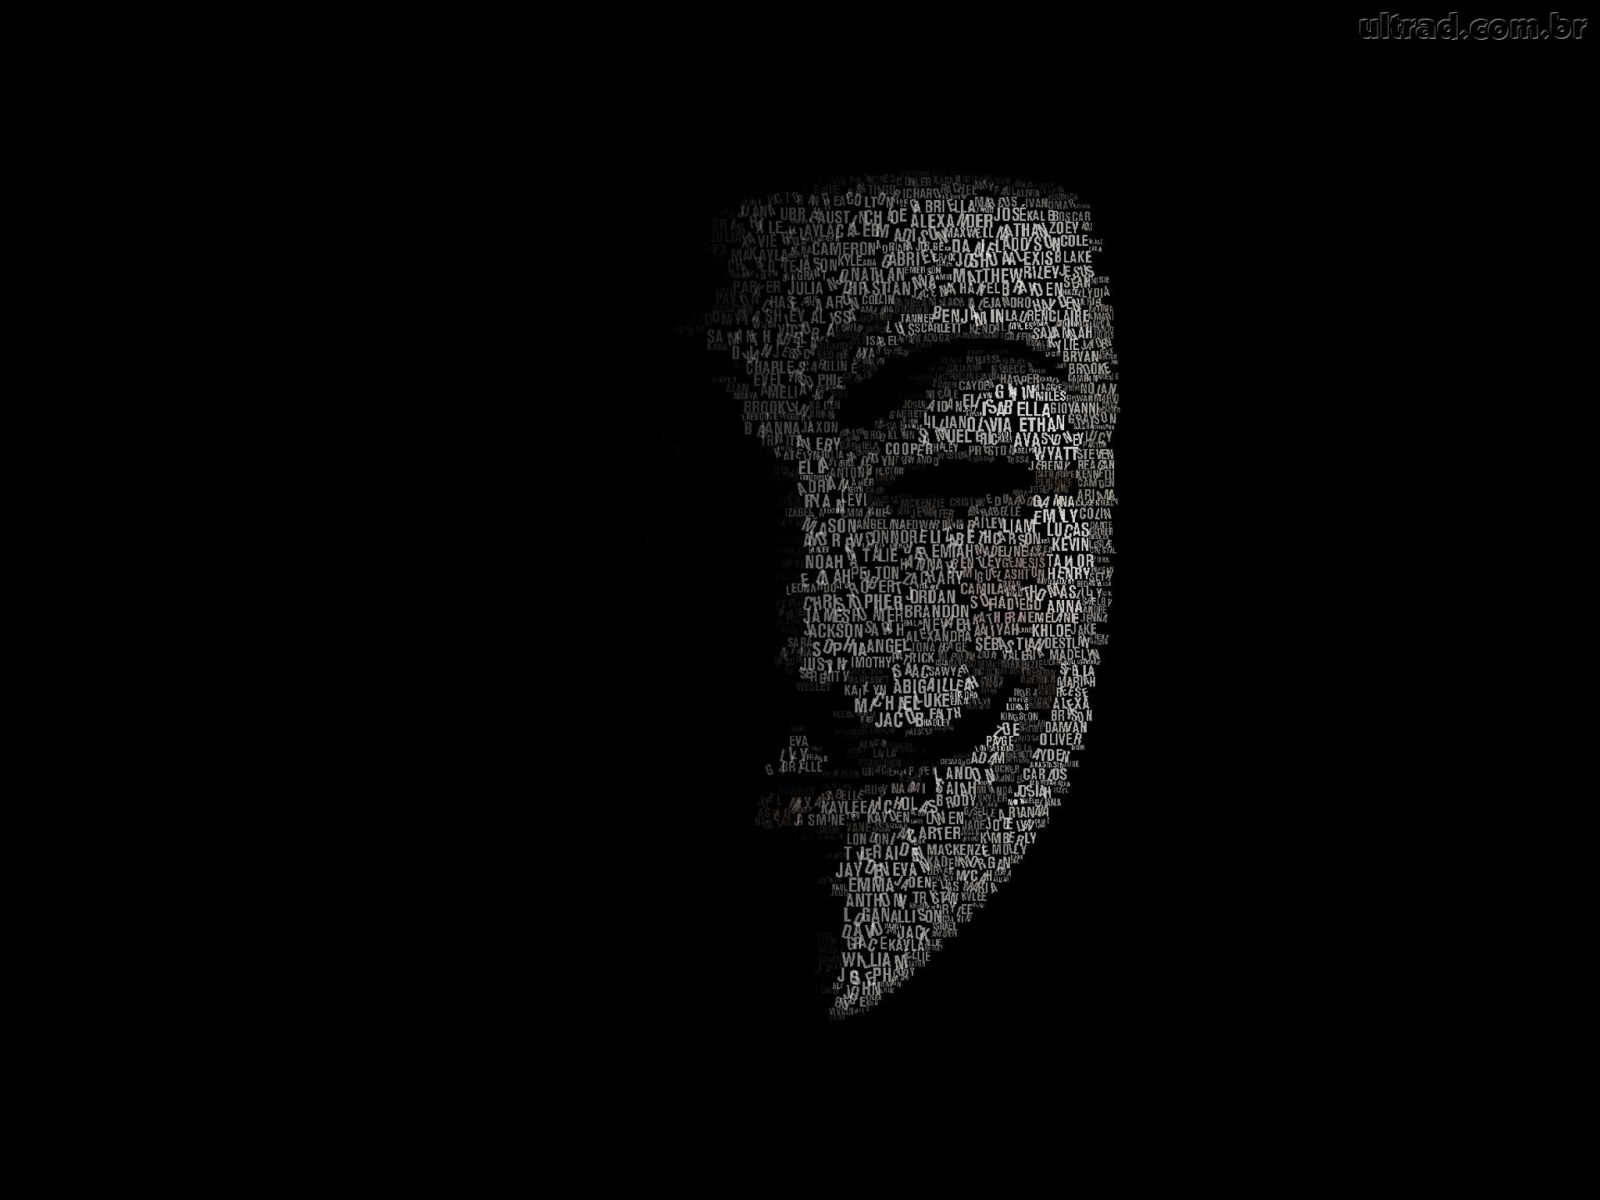 termos mais buscados 1366x768 wallpaper anonymous wallpaper mascara